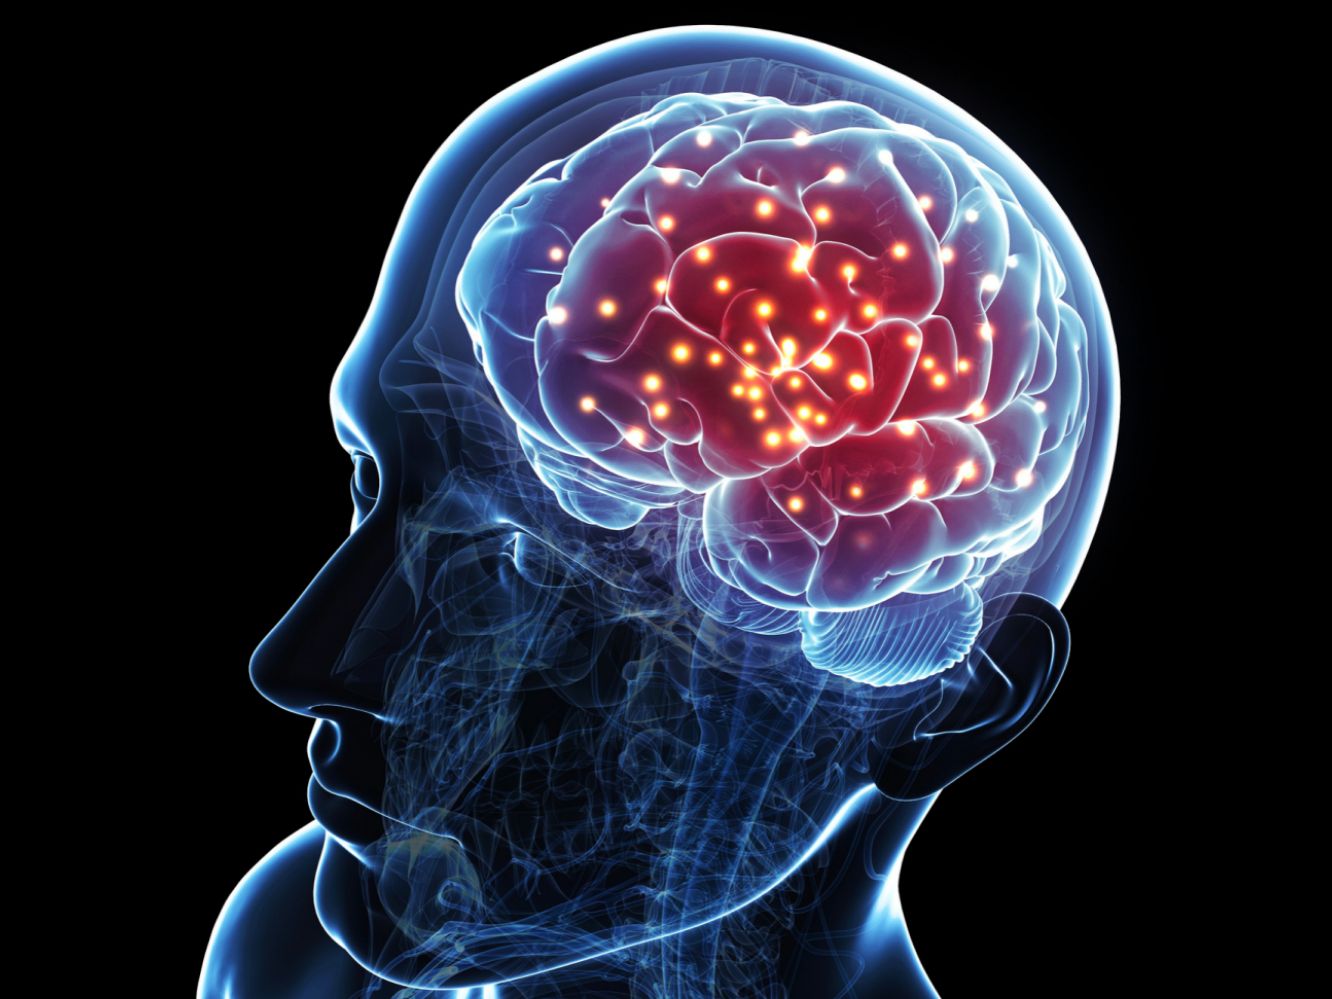 عکس مغز انسان واقعی برای استفاده در تحقیق